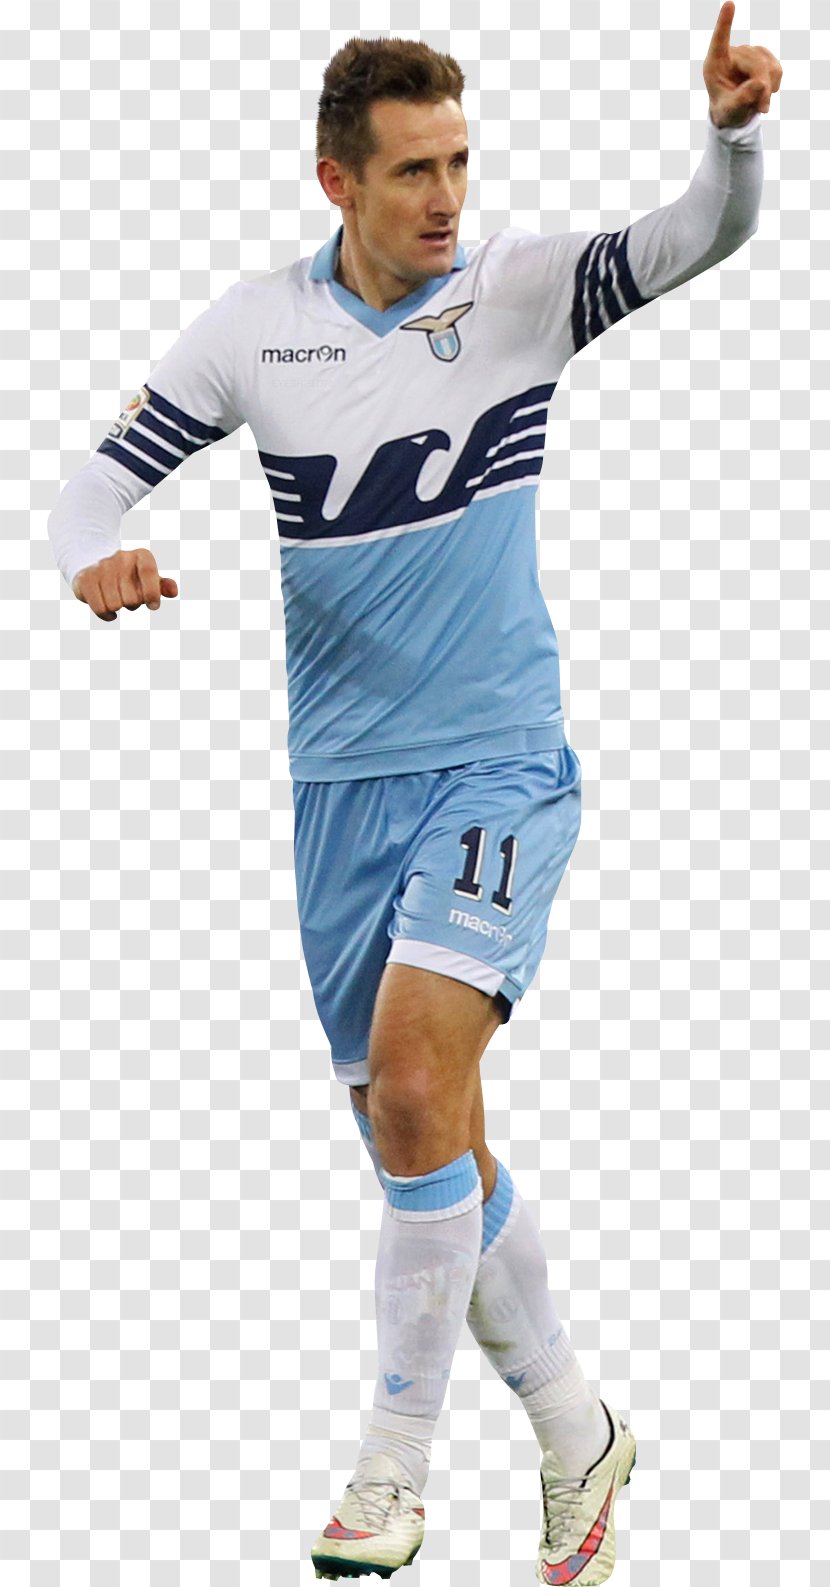 Joaquín Jersey Sport Peloc Football Player - Soccer - Miroslav Klose Transparent PNG